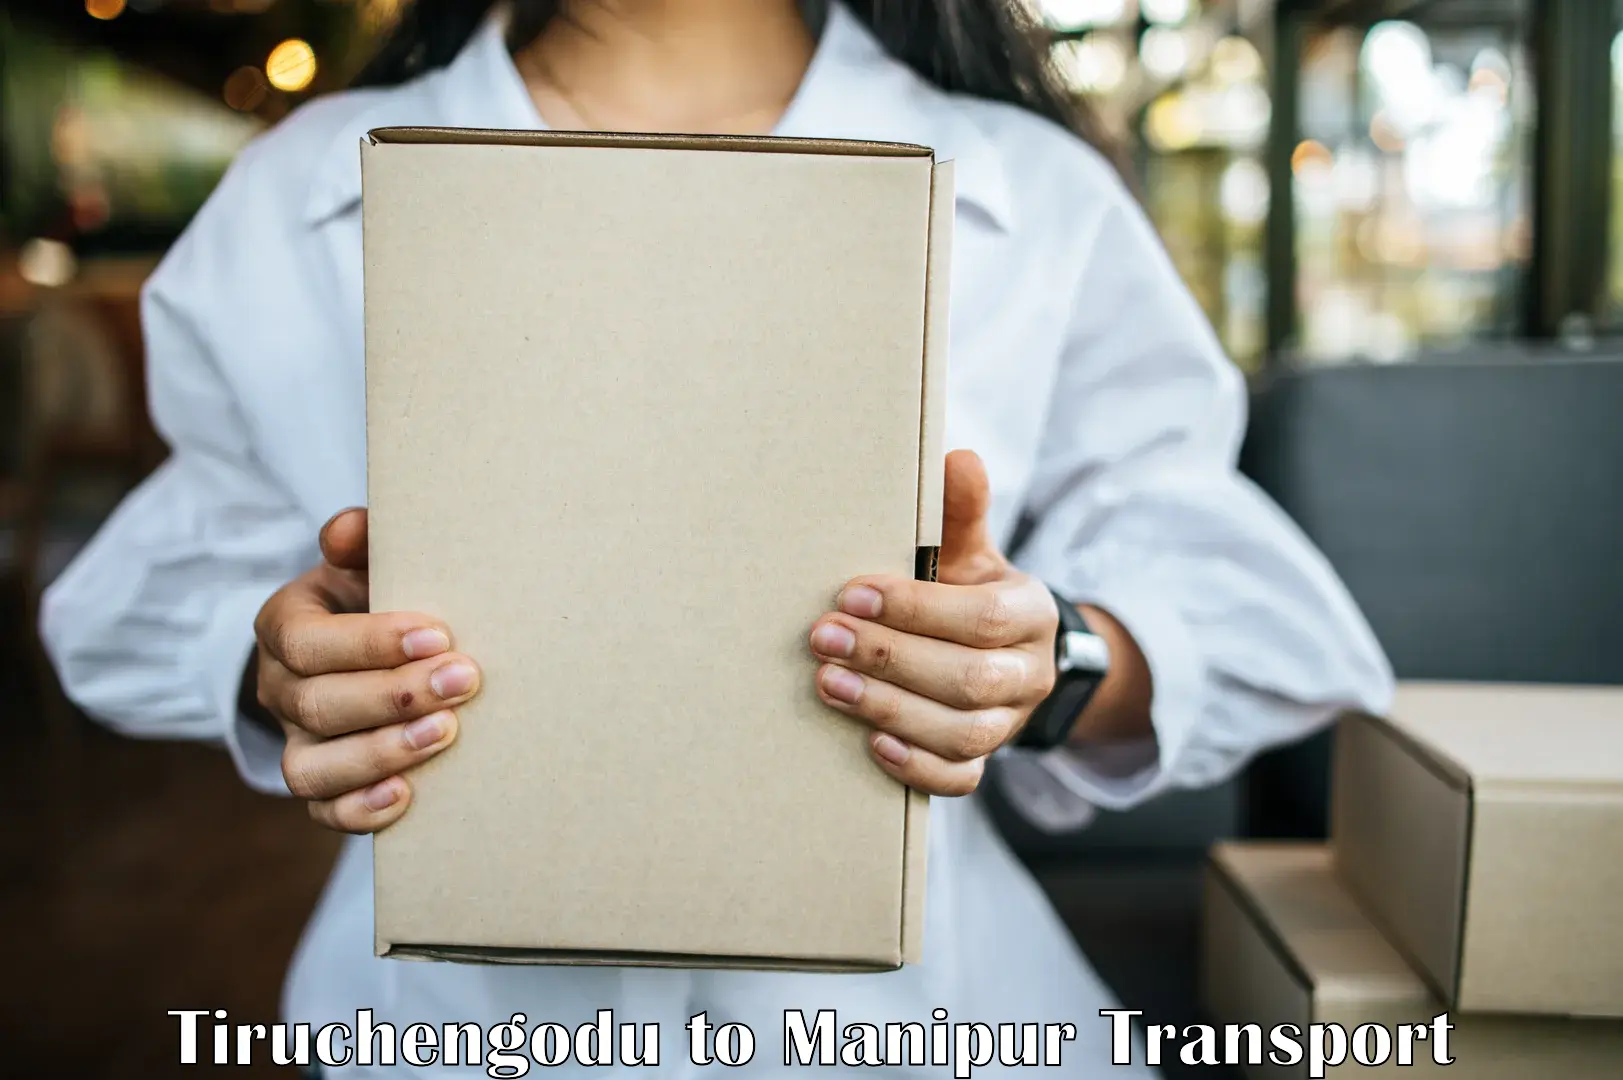 Intercity transport Tiruchengodu to Manipur